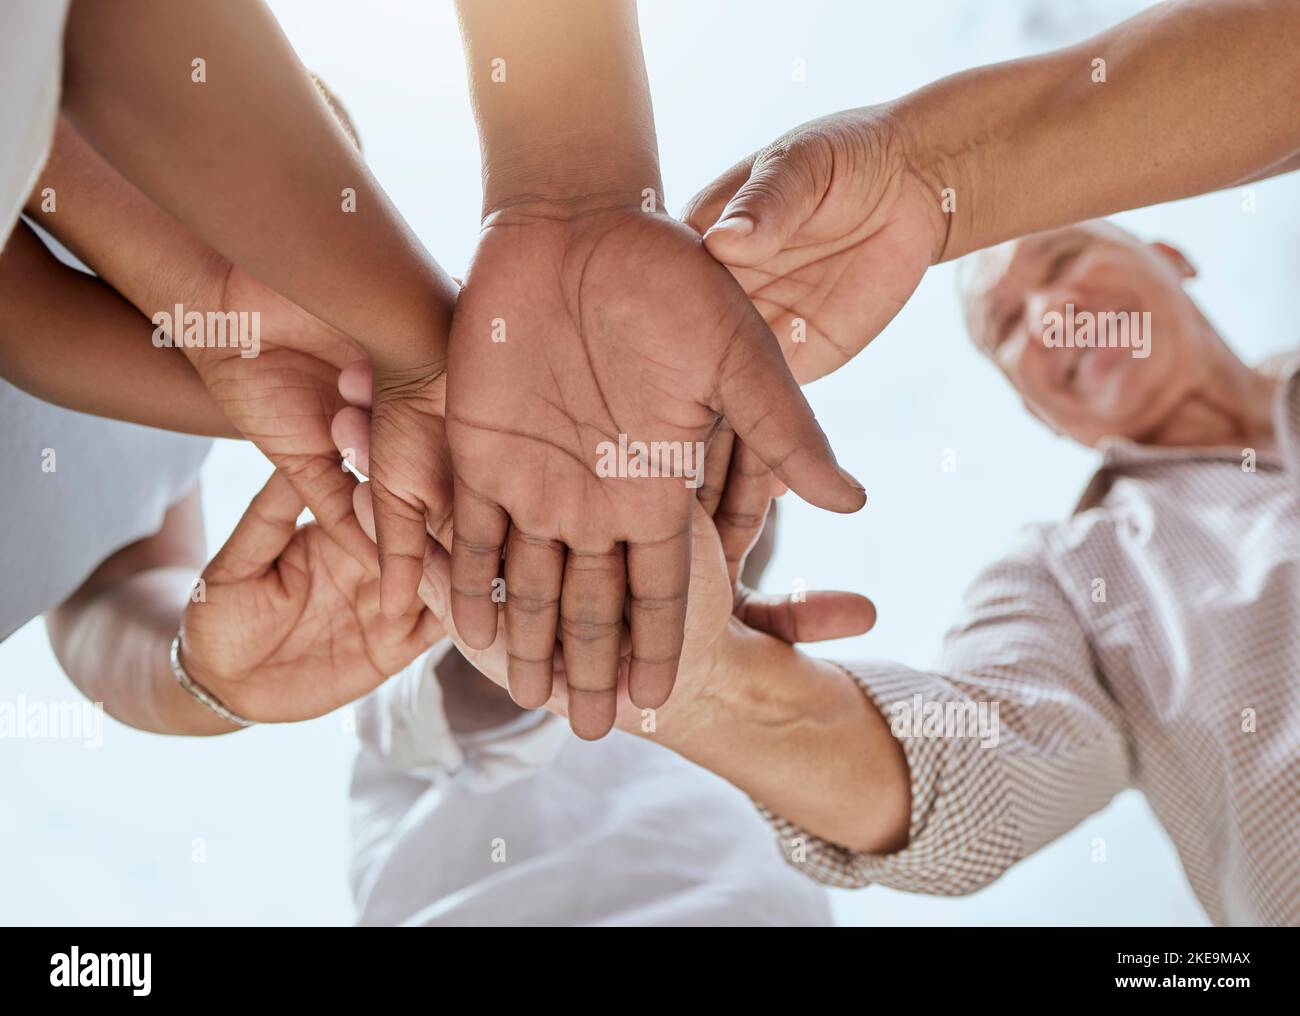 Gemeinschaft, Unterstützung und Hände der Familie in der Natur mit Bottom-View für Wachstum, glücklich oder Teamarbeit Denkweise. Mission, Gesundheit und Vertrauen mit Hand Stapel Stockfoto